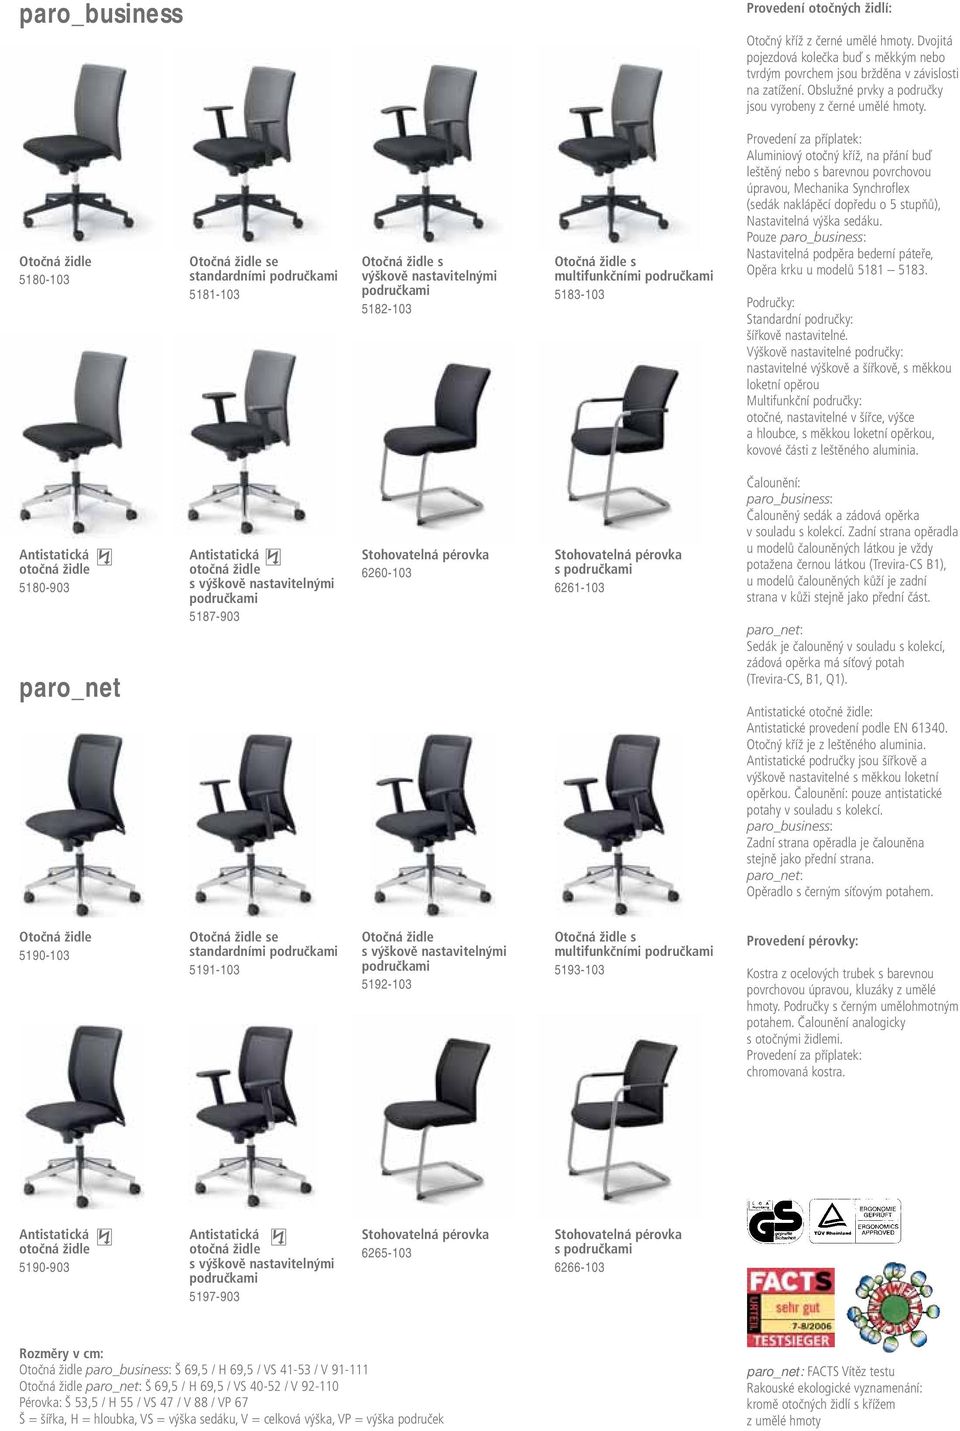 Otočná židle 5180-103 Otočná židle se standardními područkami 5181-103 Otočná židle s výškově nastavitelnými područkami 5182-103 Otočná židle s multifunkčními područkami 5183-103 Provedení za